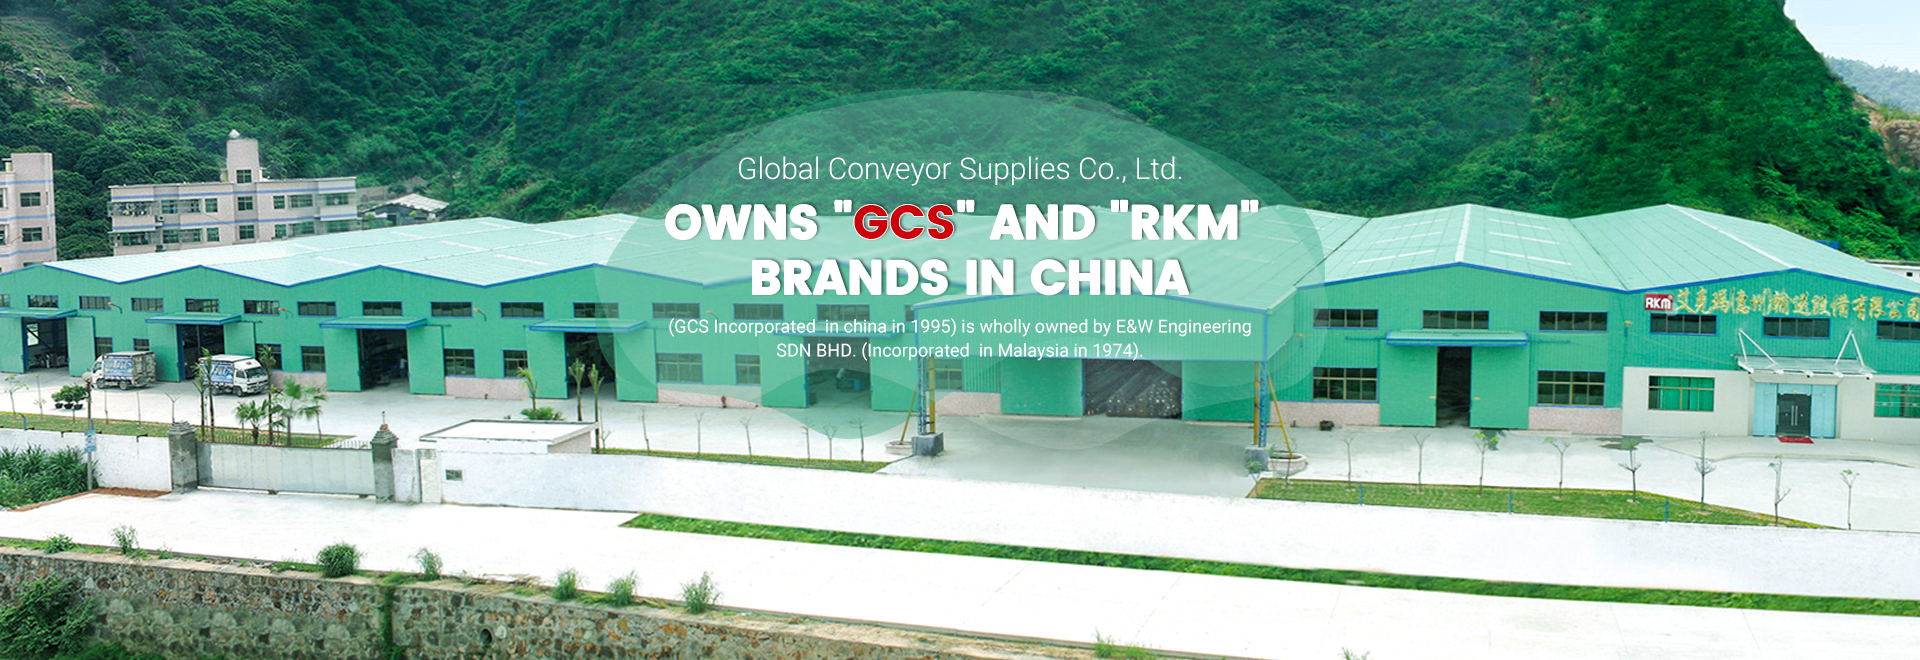 GCS Global Conveyor Supplies